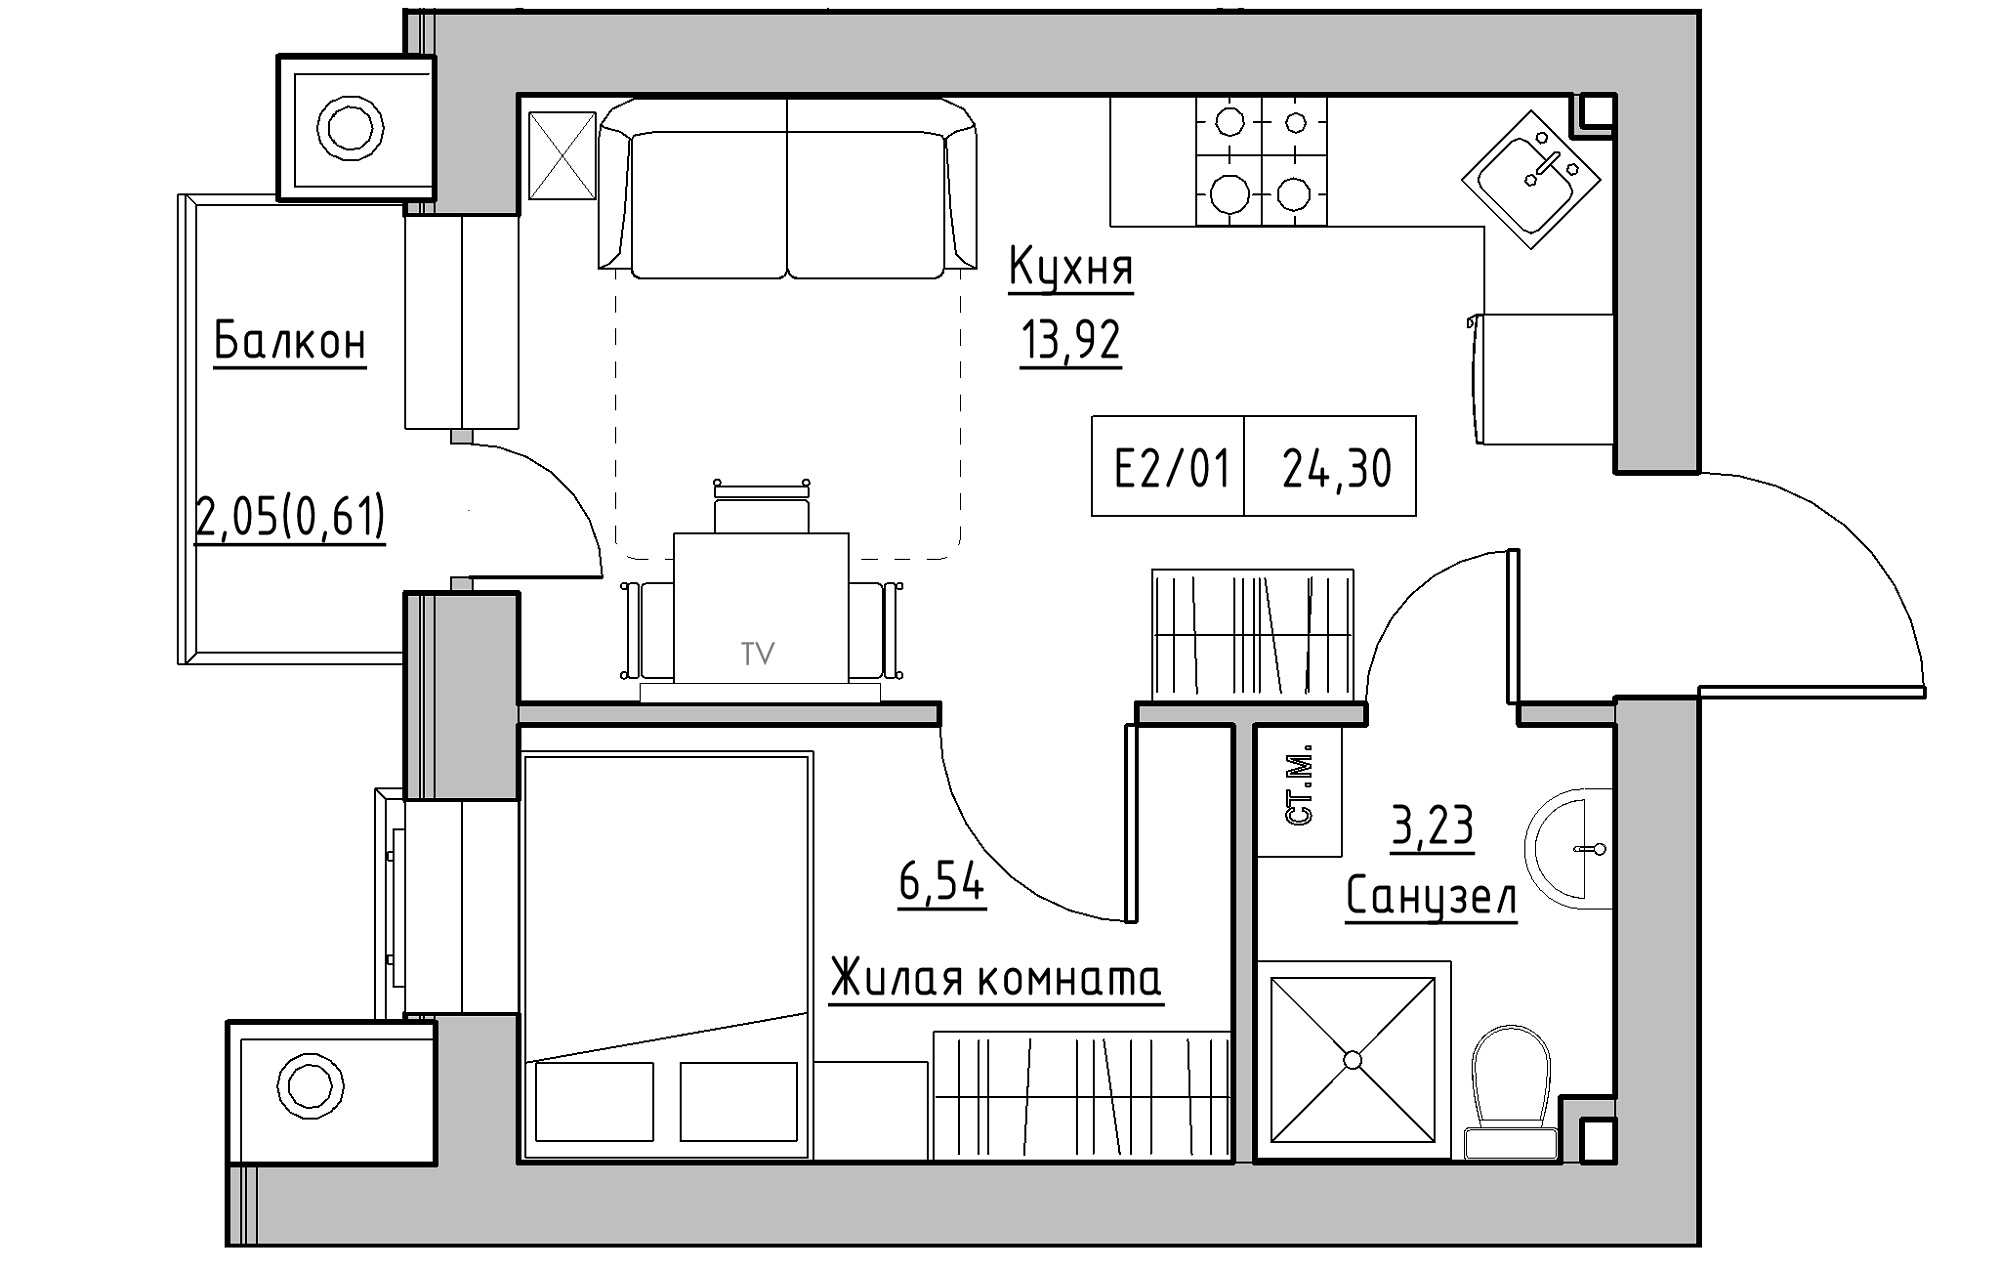 Планировка 1-к квартира площей 24.3м2, KS-013-02/0005.